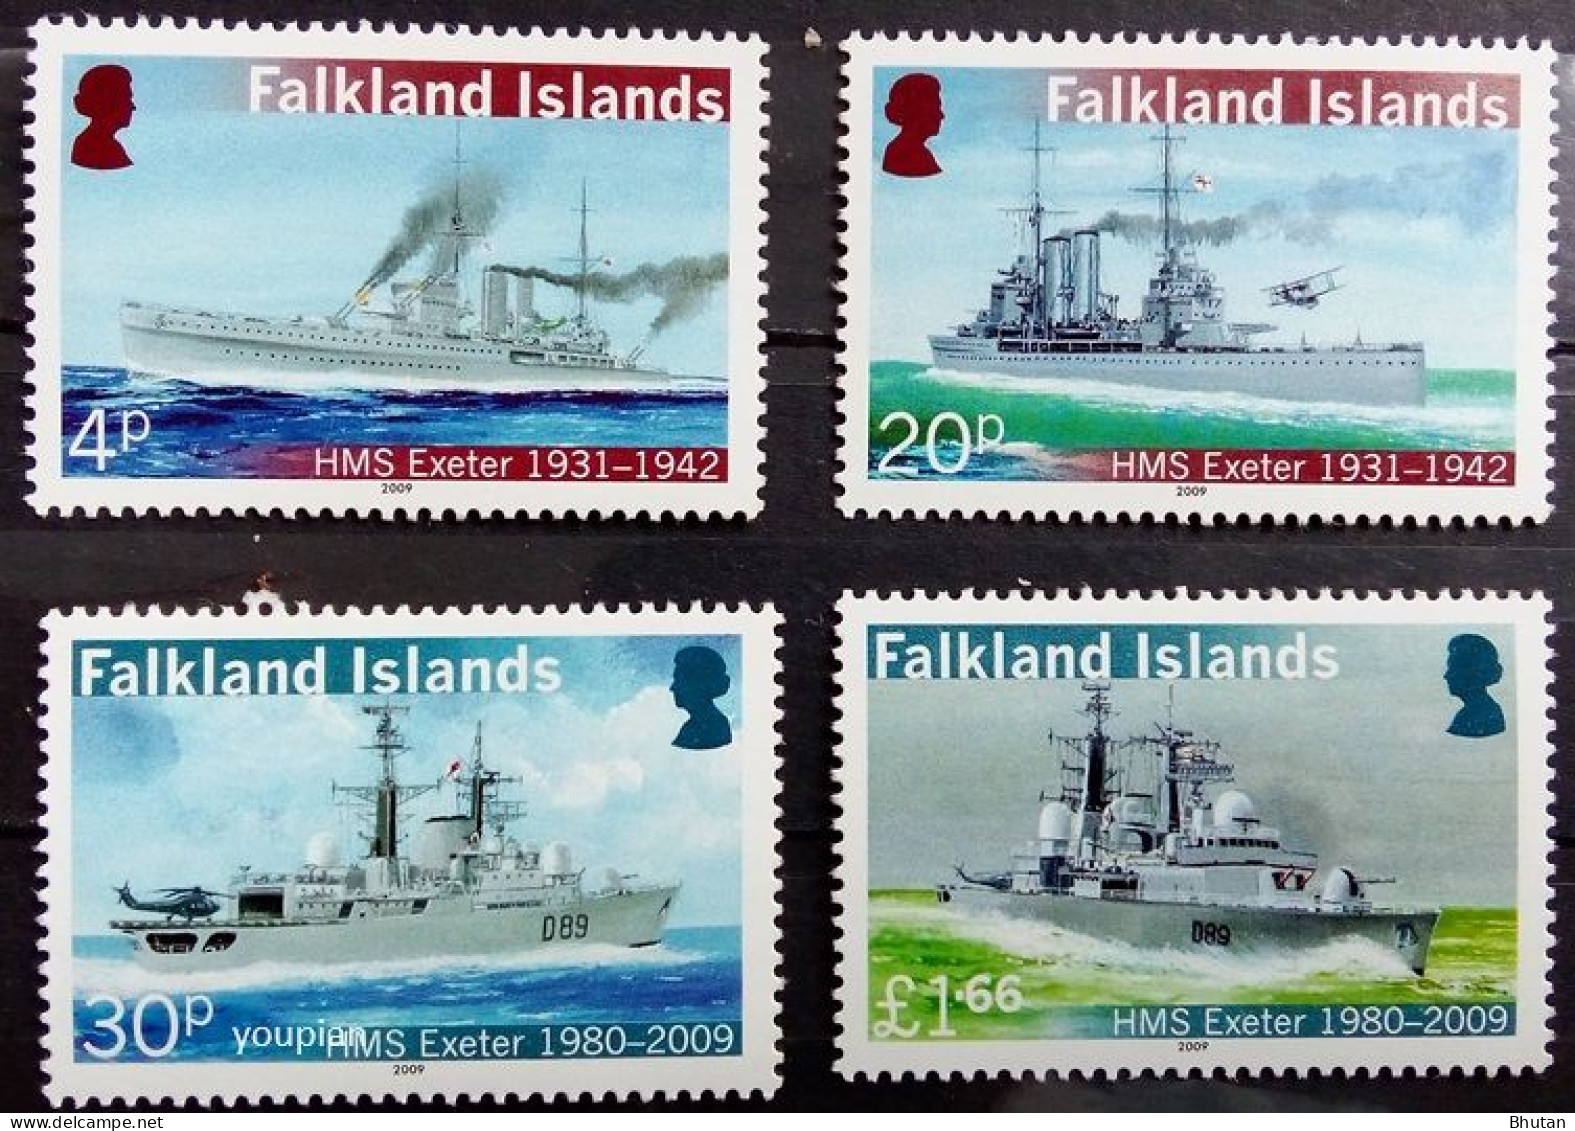 Falkland Islands 2009, Ships - HMS Exeter, MNH Stamps Set - Falkland Islands